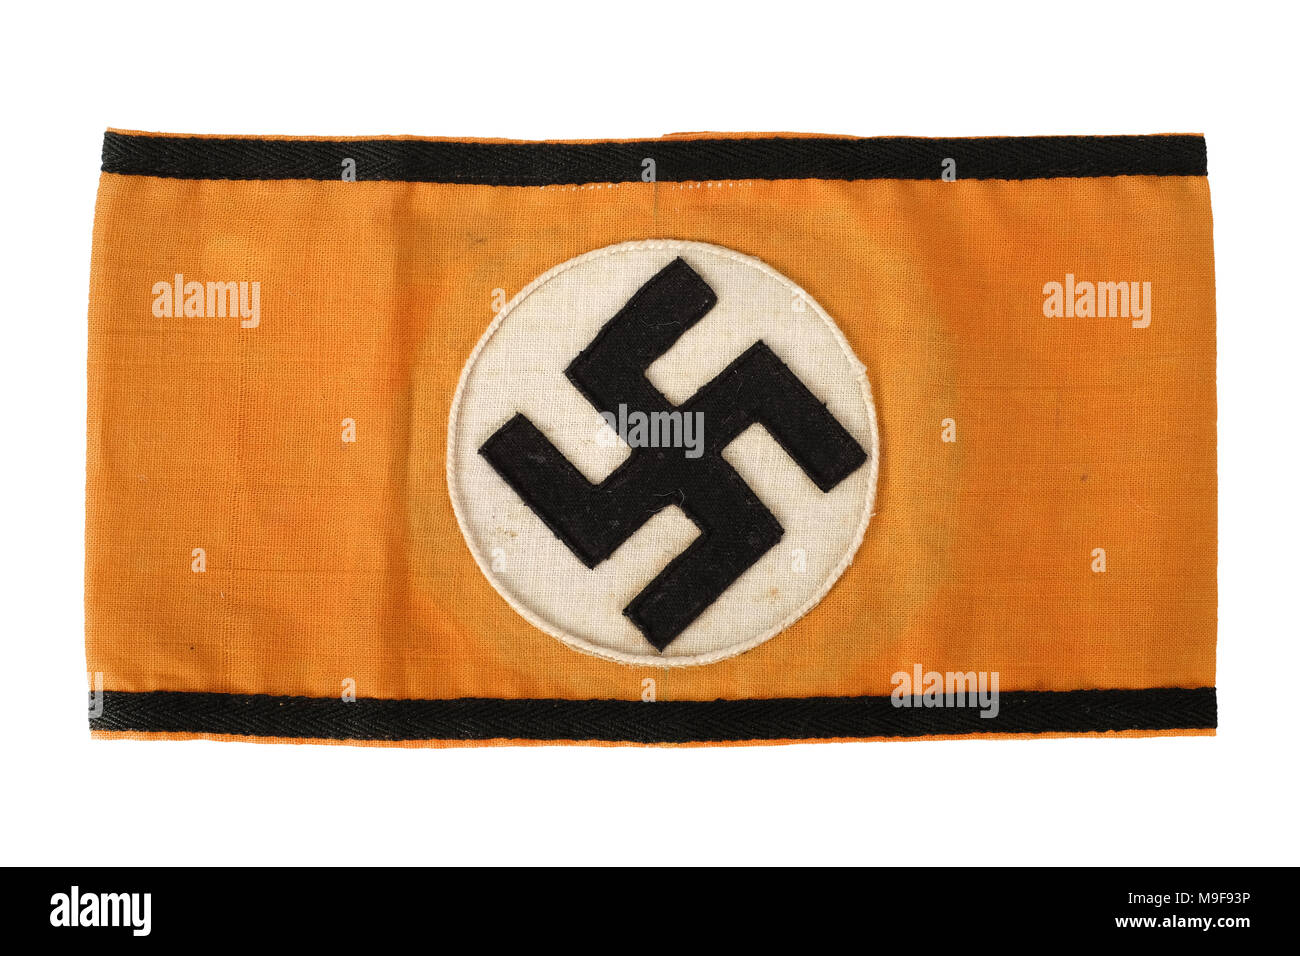 WW2 German Troisième Reich Nazi authentique brassard à parti avec la croix gammée sur fond orange Banque D'Images